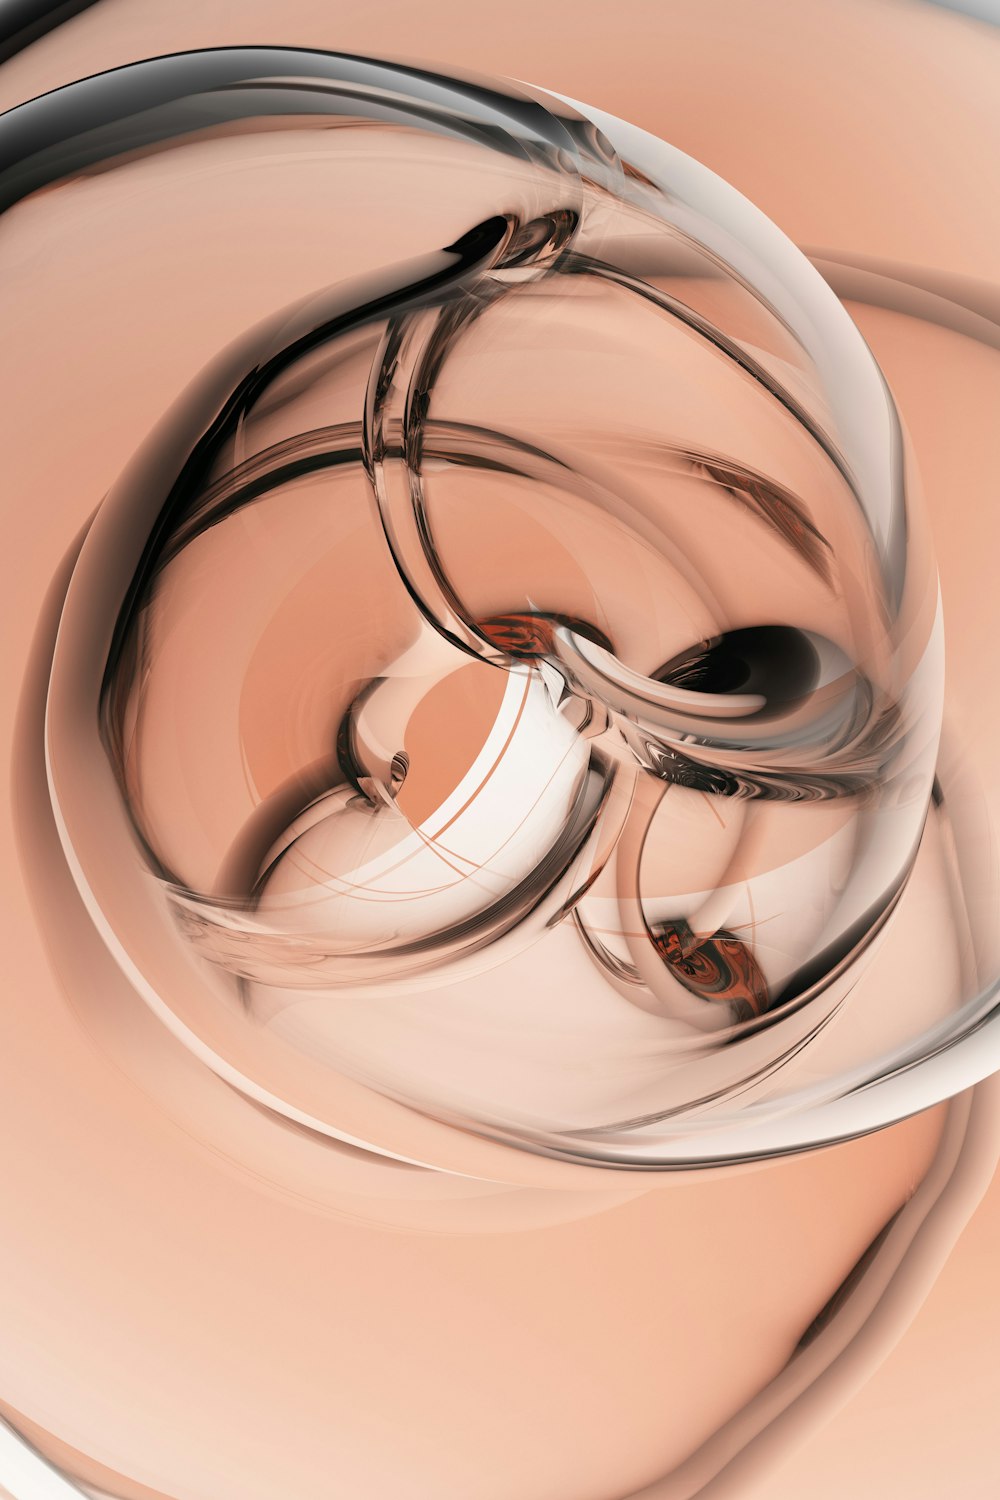 un'immagine generata al computer di un oggetto circolare